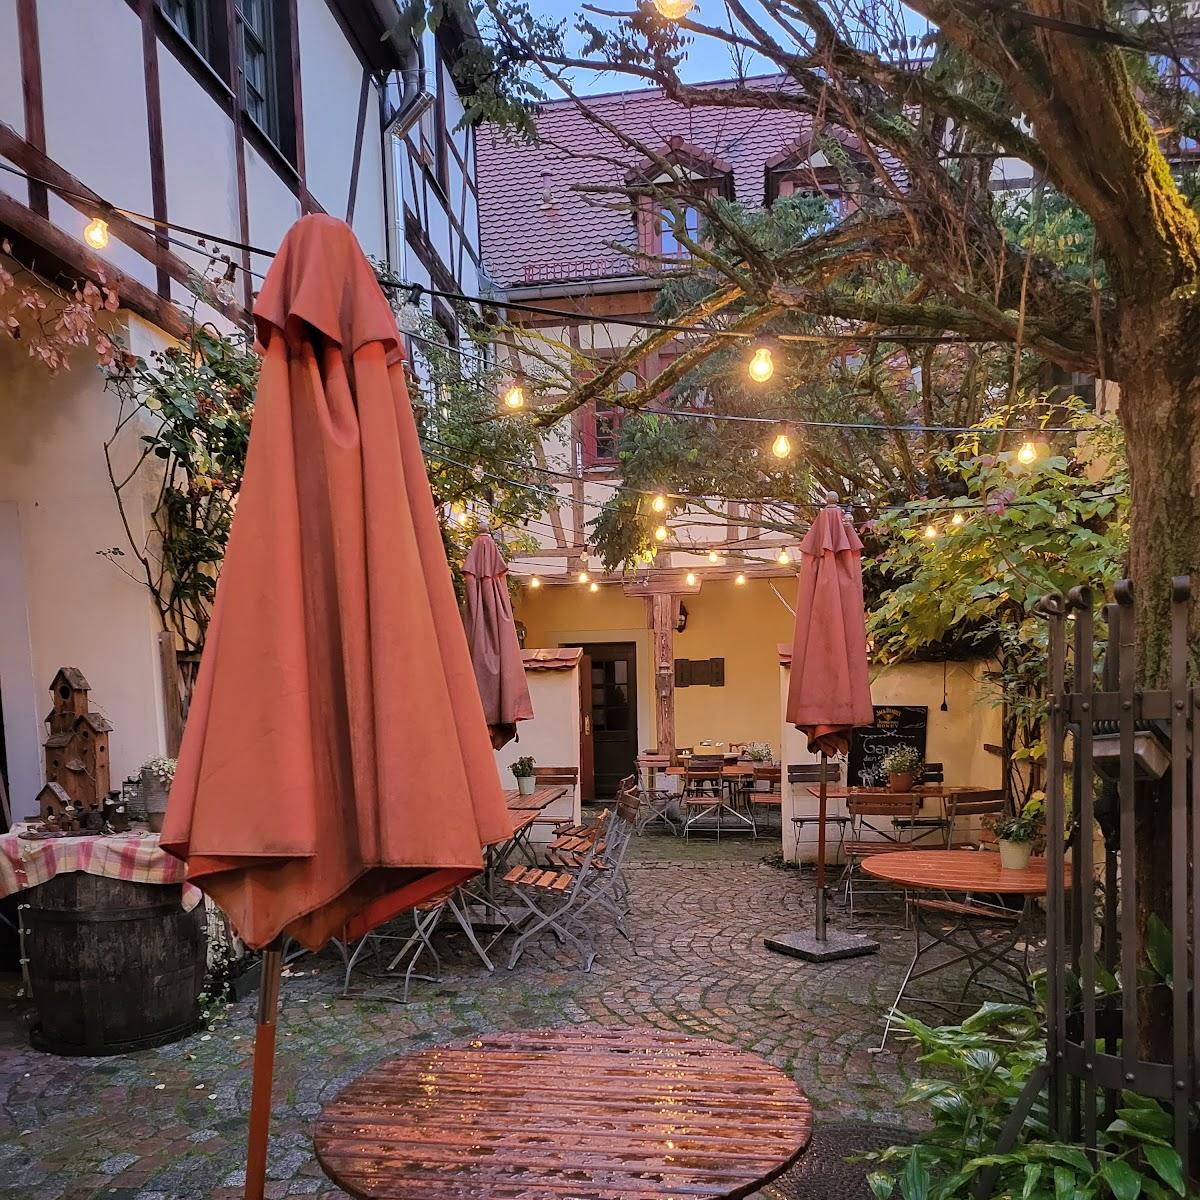 Restaurant "Matsch - s älteste Gastwirtschaft & Hotel" in Plauen